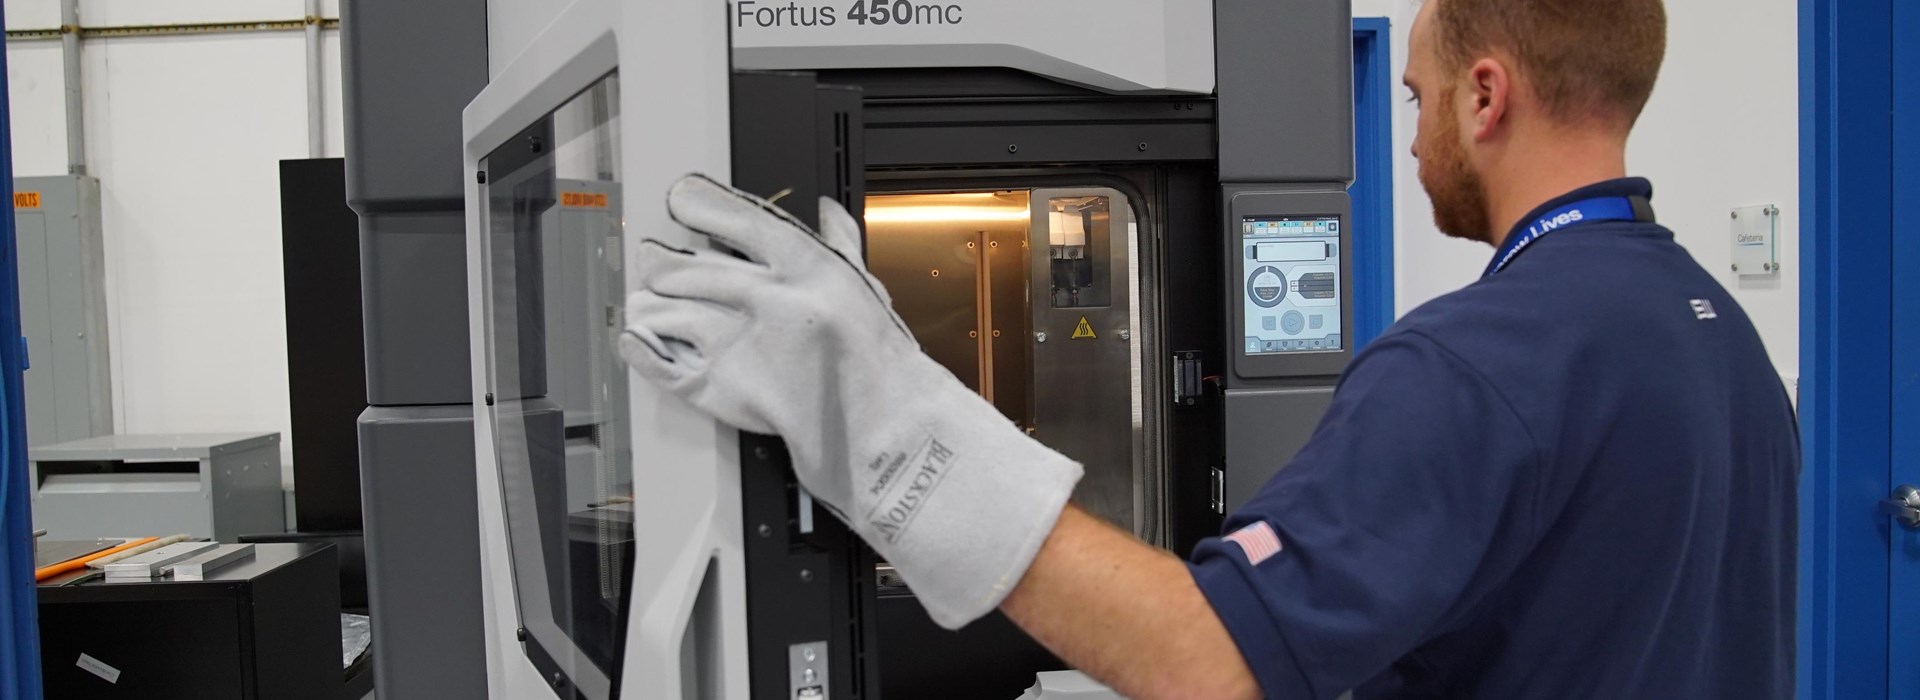 Worker closing Fortus 450mc 3D printer